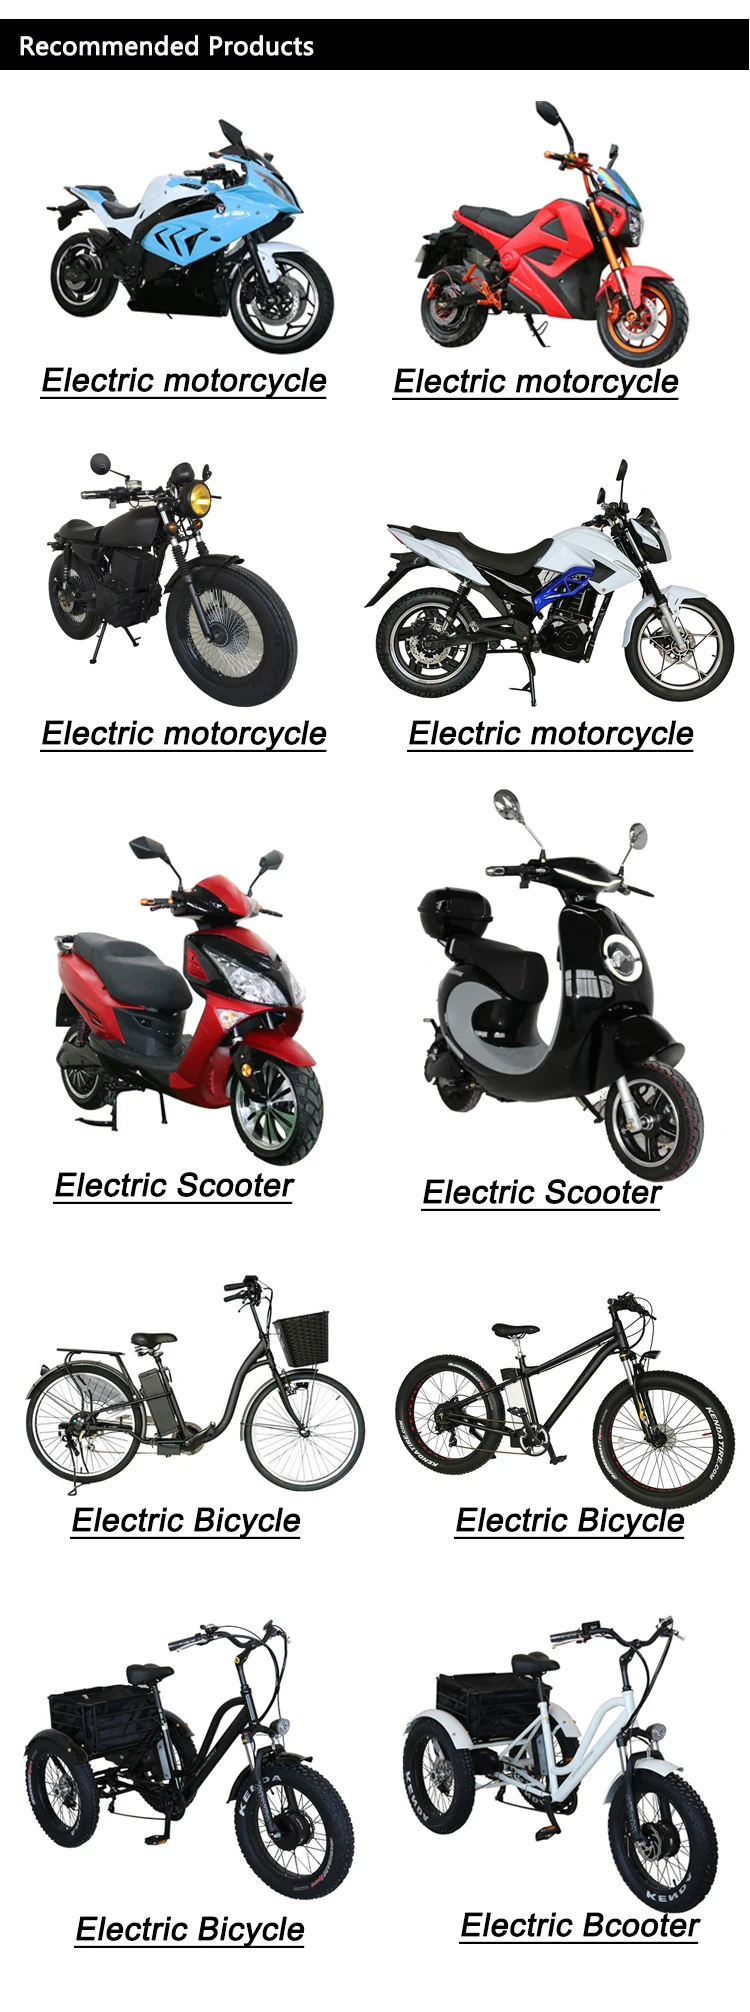 oreva electric bike price